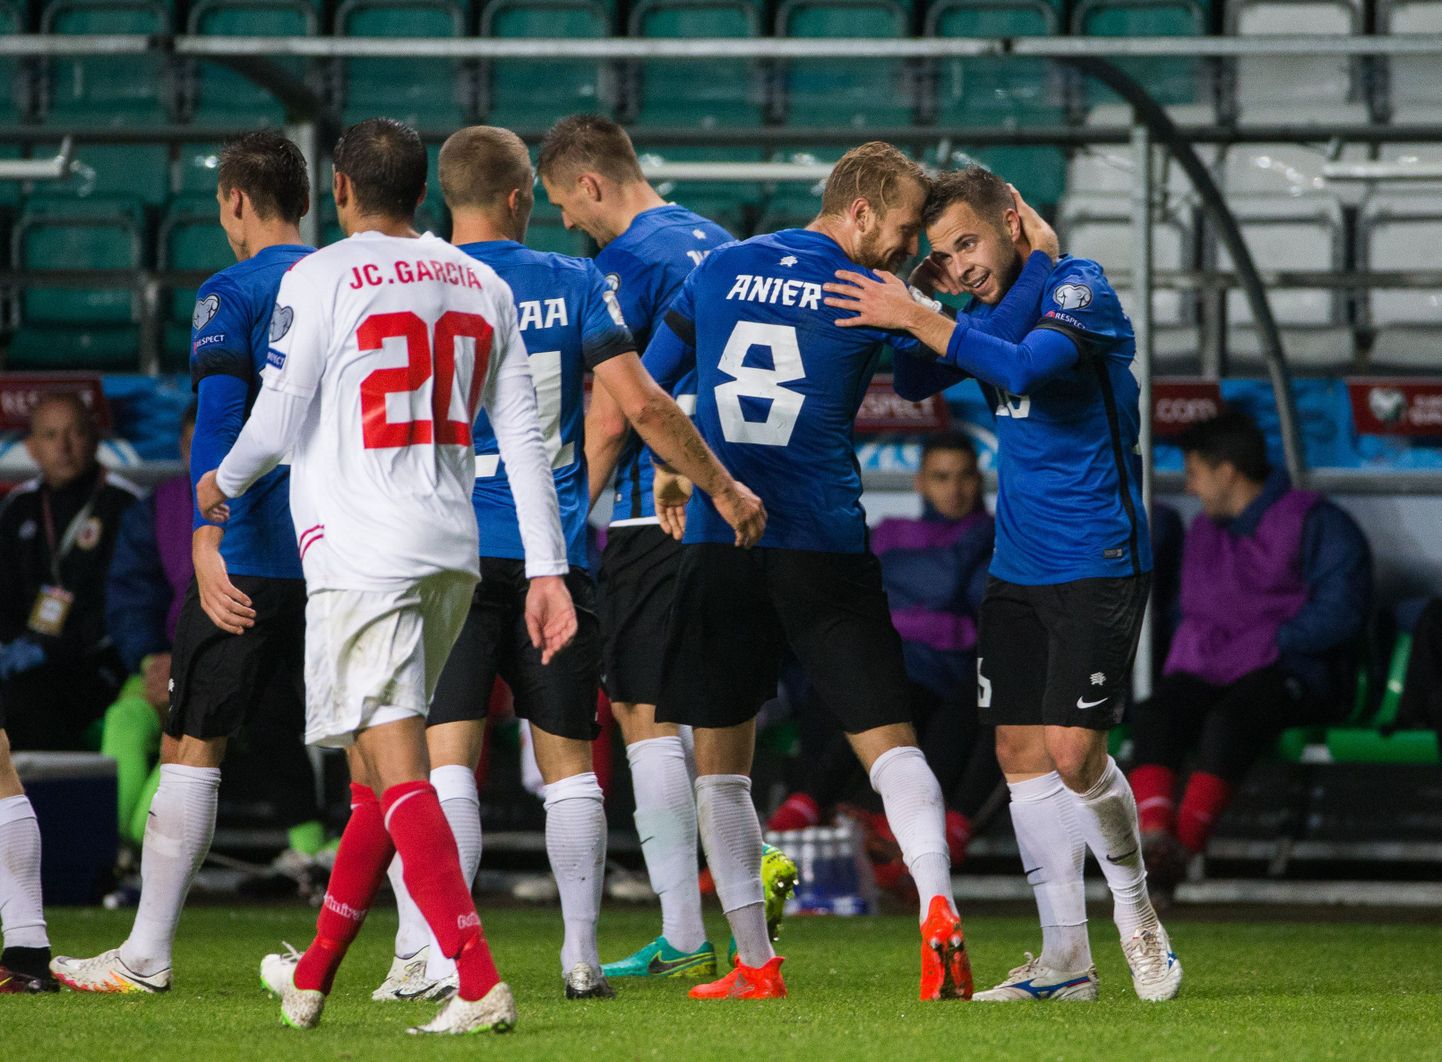 Eesti jalgpallikoondis kohtus viimati Gibraltariga mullu oktoobris kodusel Lilleküla staadionil ning siis said kindla 4:0 võidu sinisärgid.